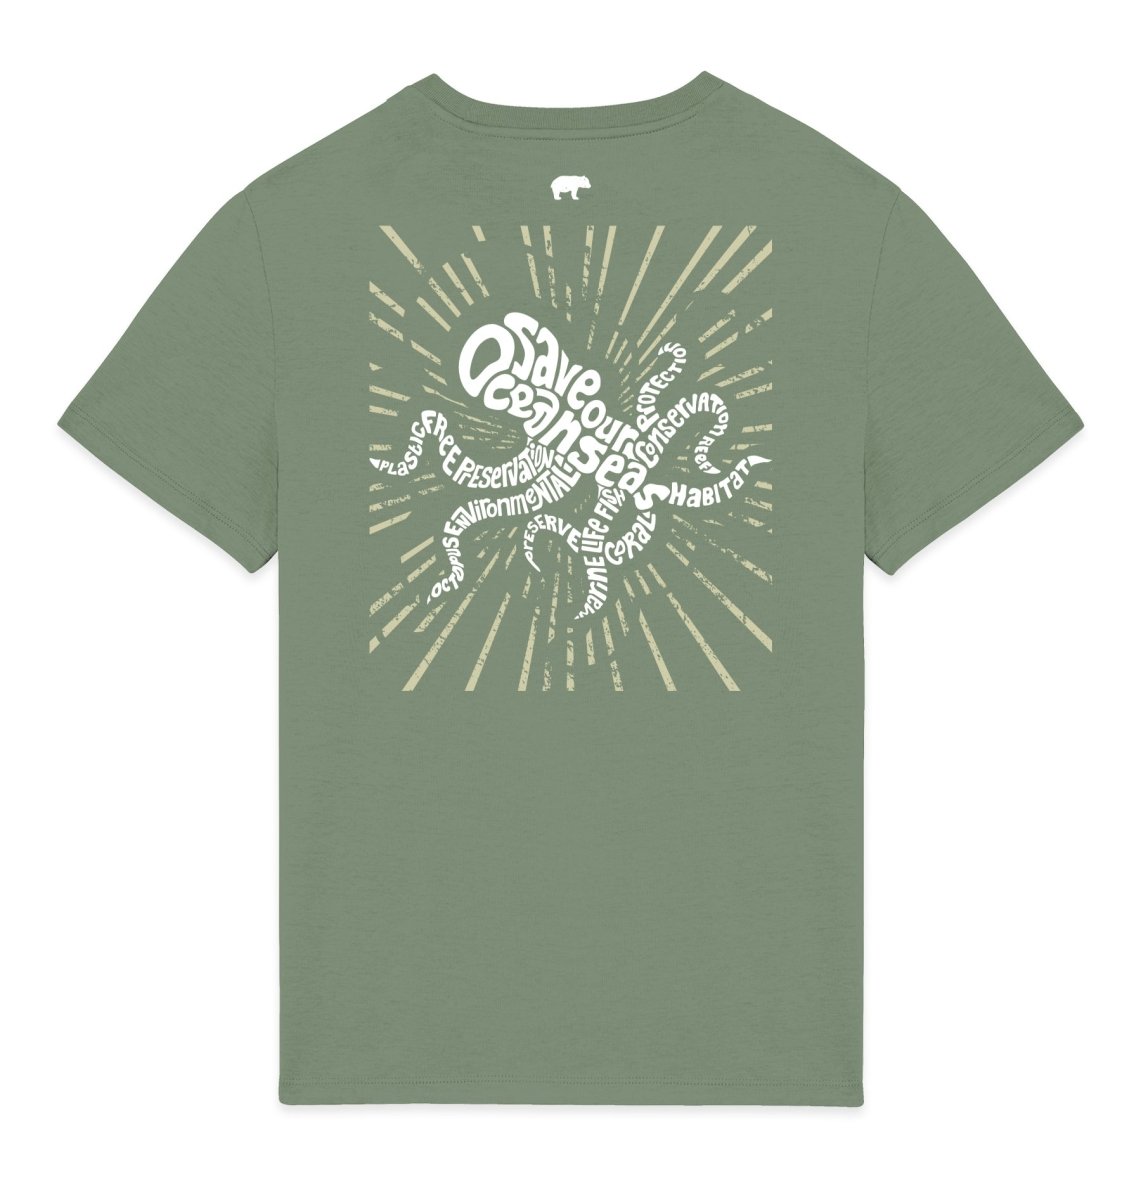 Octopus Mens T-shirt - Blue Panda